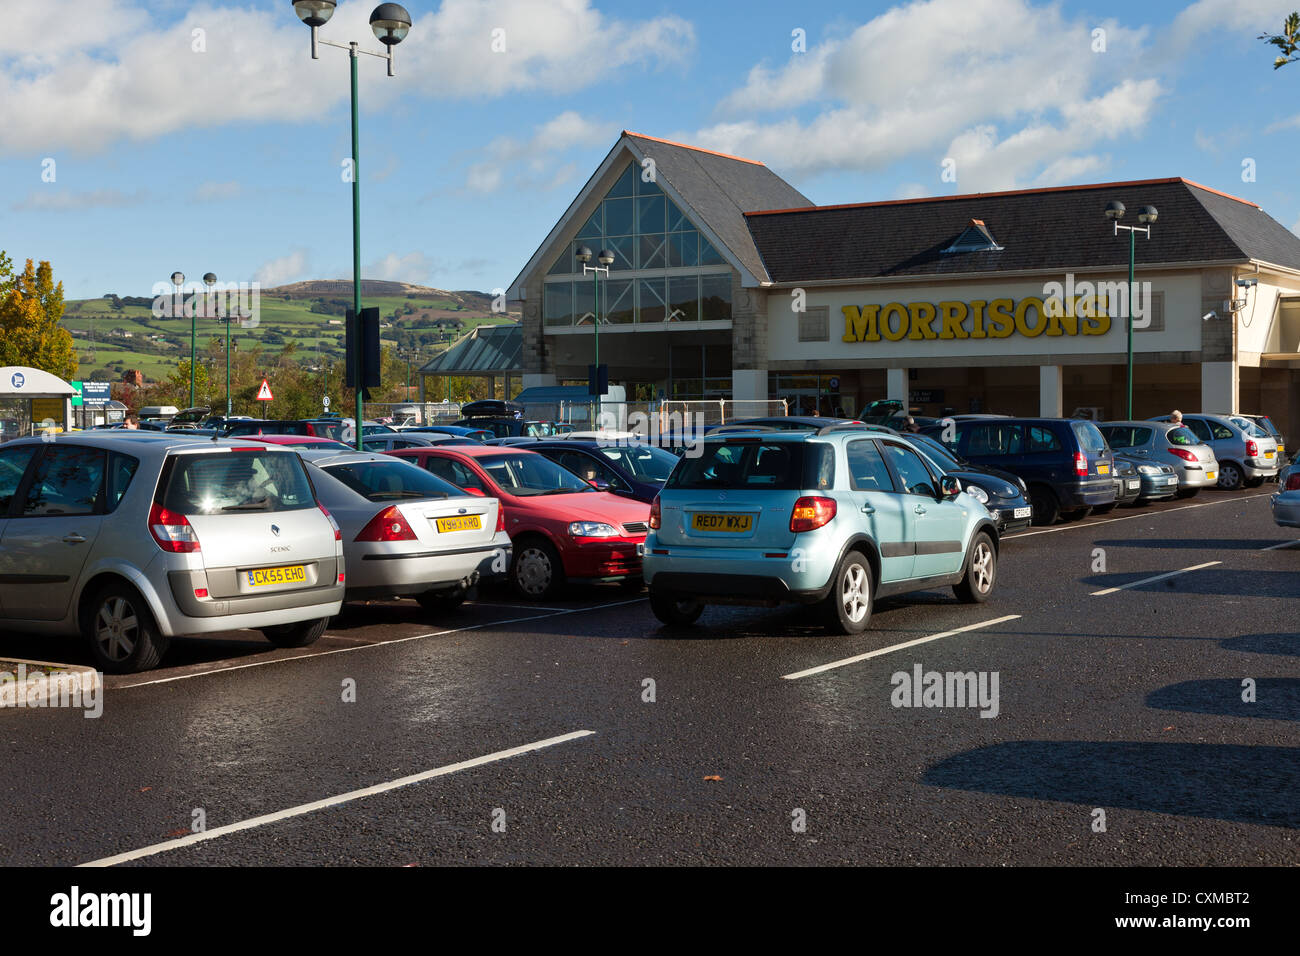 Supermercado Morrison en el castillo de corte centro comercial en el centro de la ciudad de Caerphilly centro con Bedwas mountain en segundo plano. Foto de stock